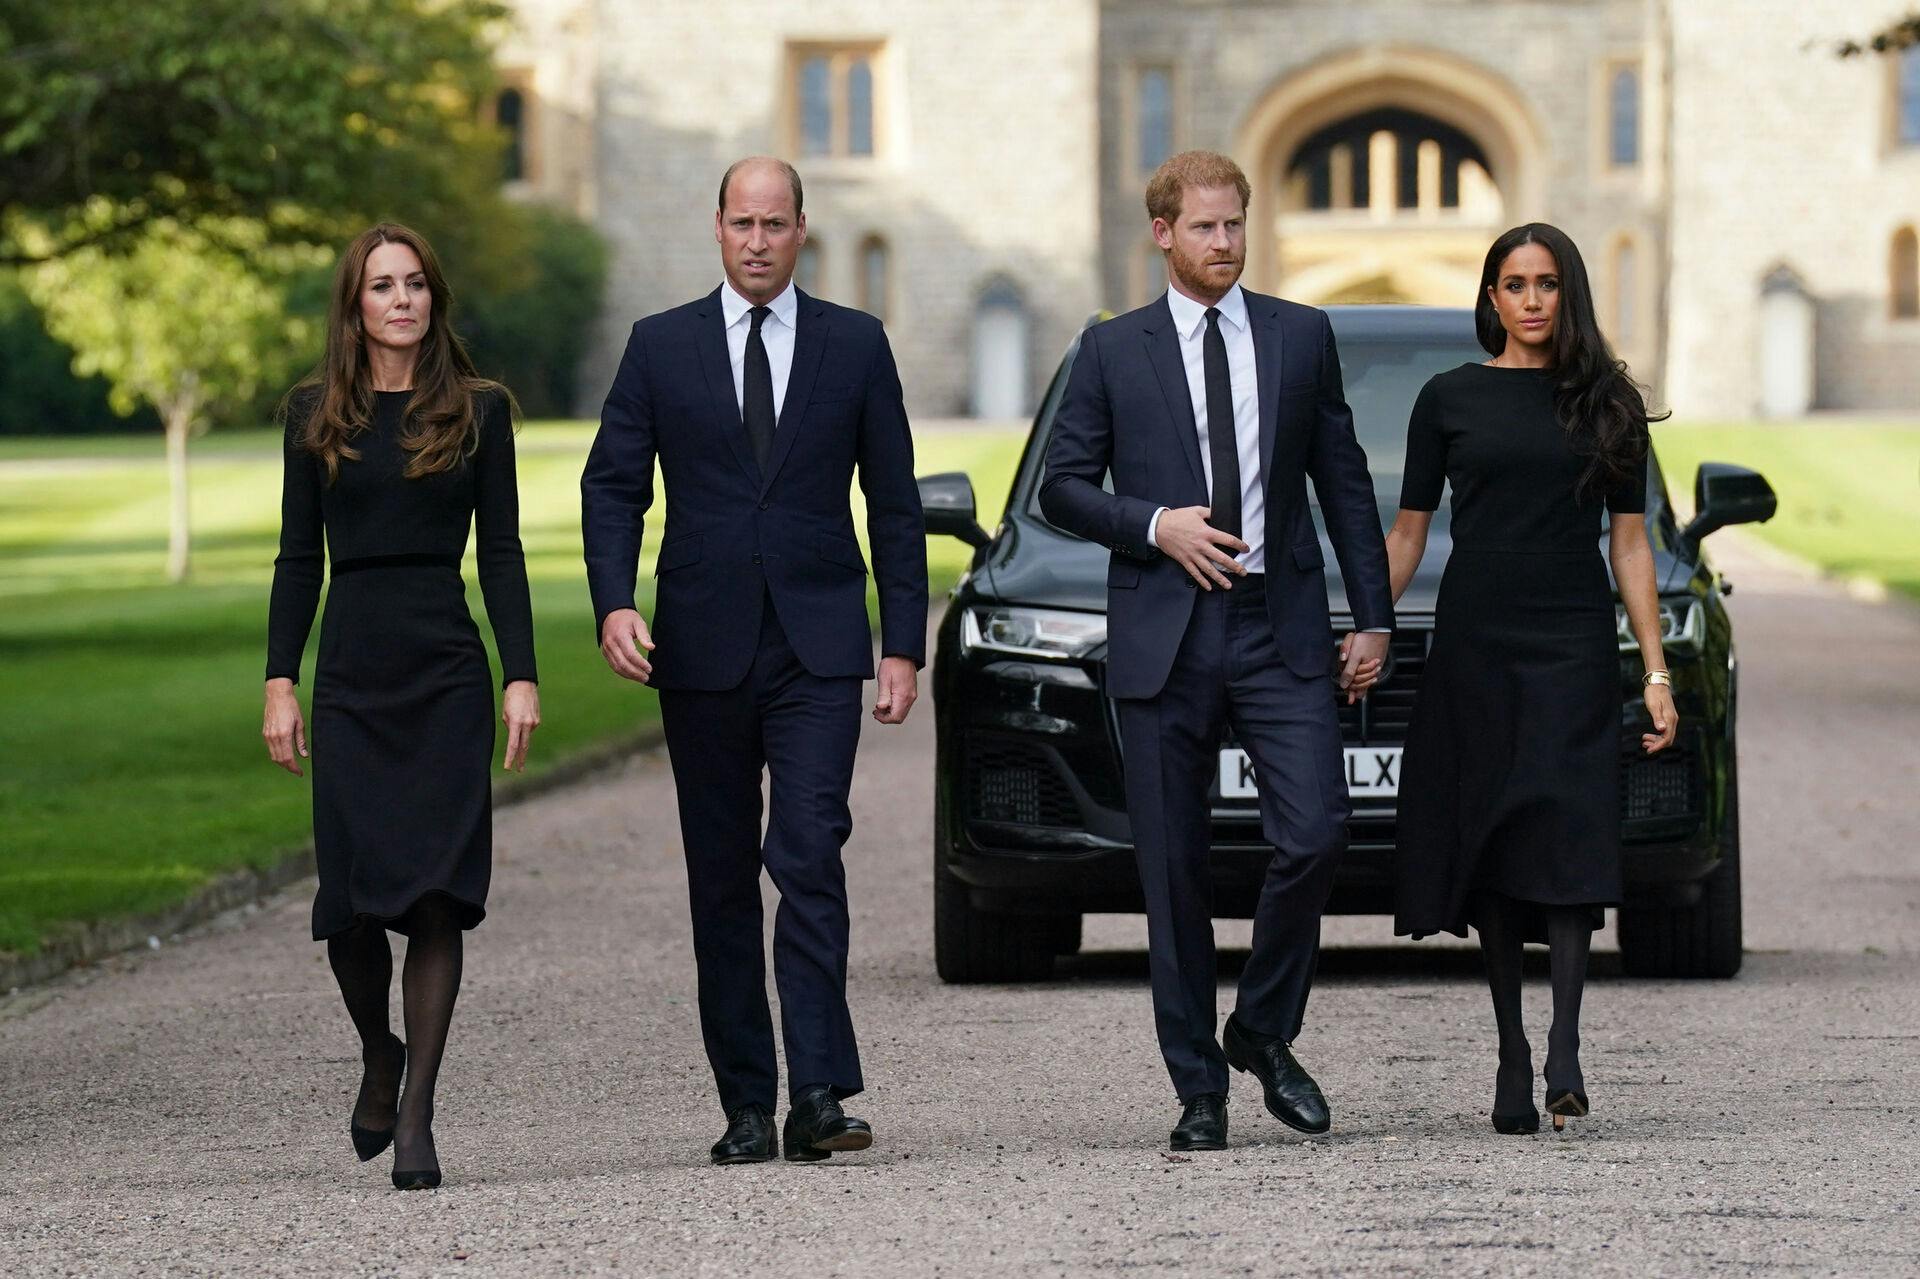 Forholdet til den engelske kronprins, William, har heller ikke været godt i flere år. I en ny bog er det blandt andet kommet frem, at Kate Middleton var blandt de royale, der stillede spørgsmålstegn ved hudfarven på Harry og Meghan Markles kommende børn.